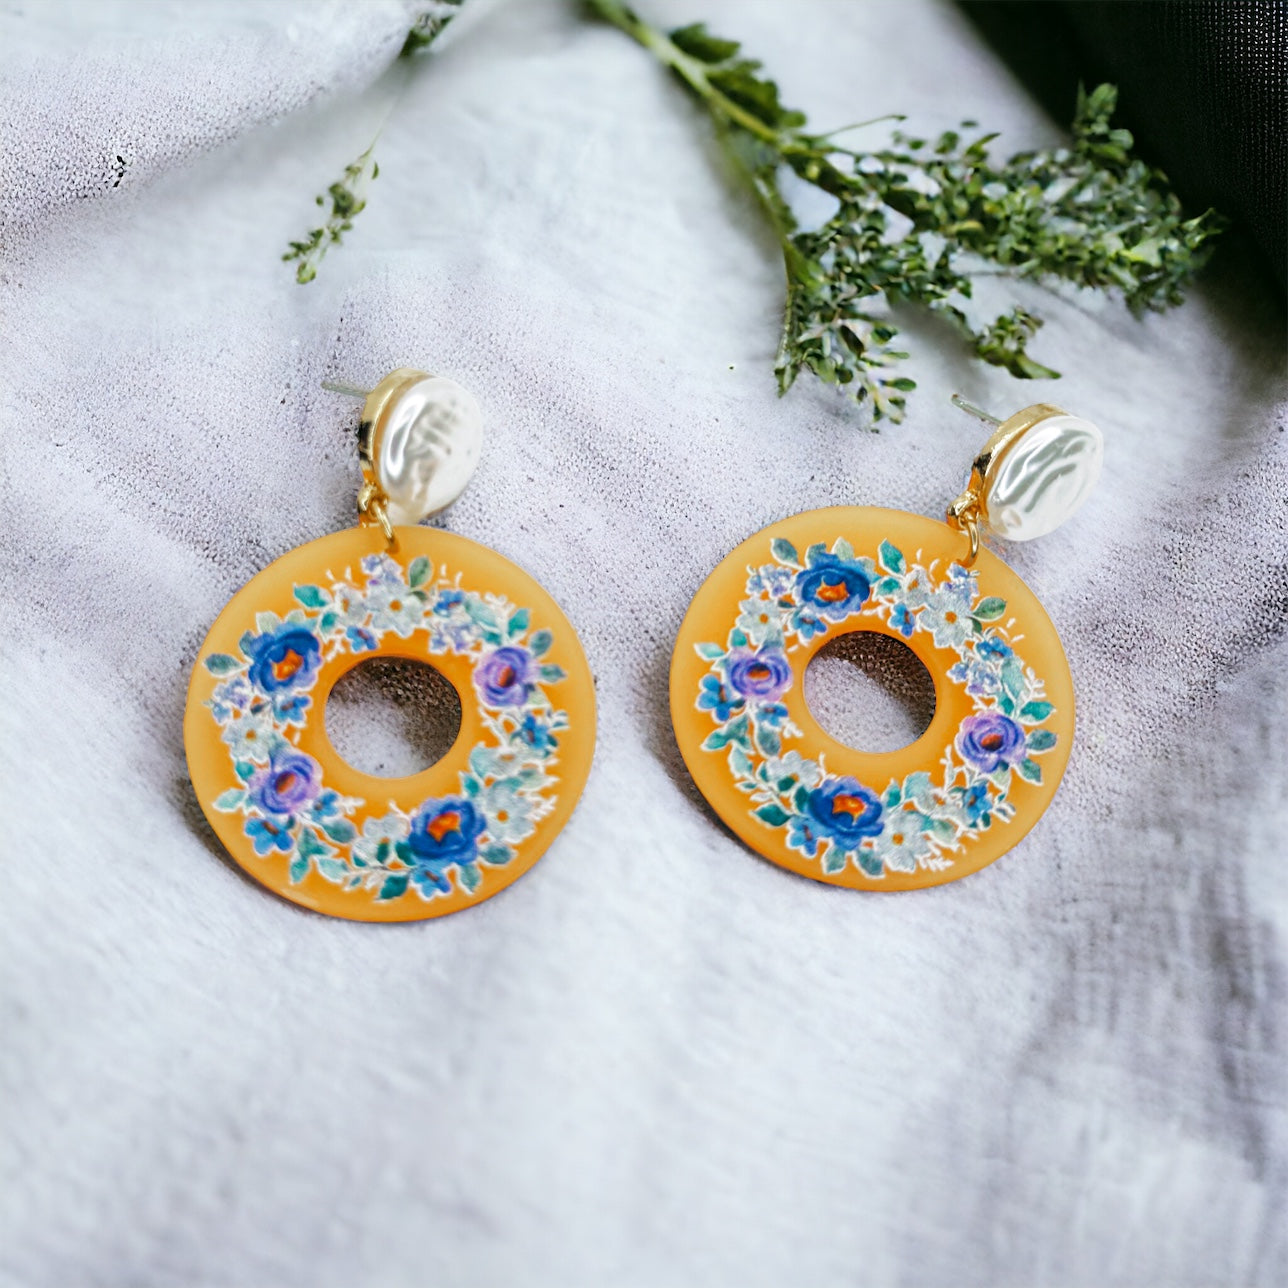 Flower Earrings - Blue Flower, Easter Earrings, Handmade Earrings, Flower Earrings, Flower Jewelry, Floral Accessories